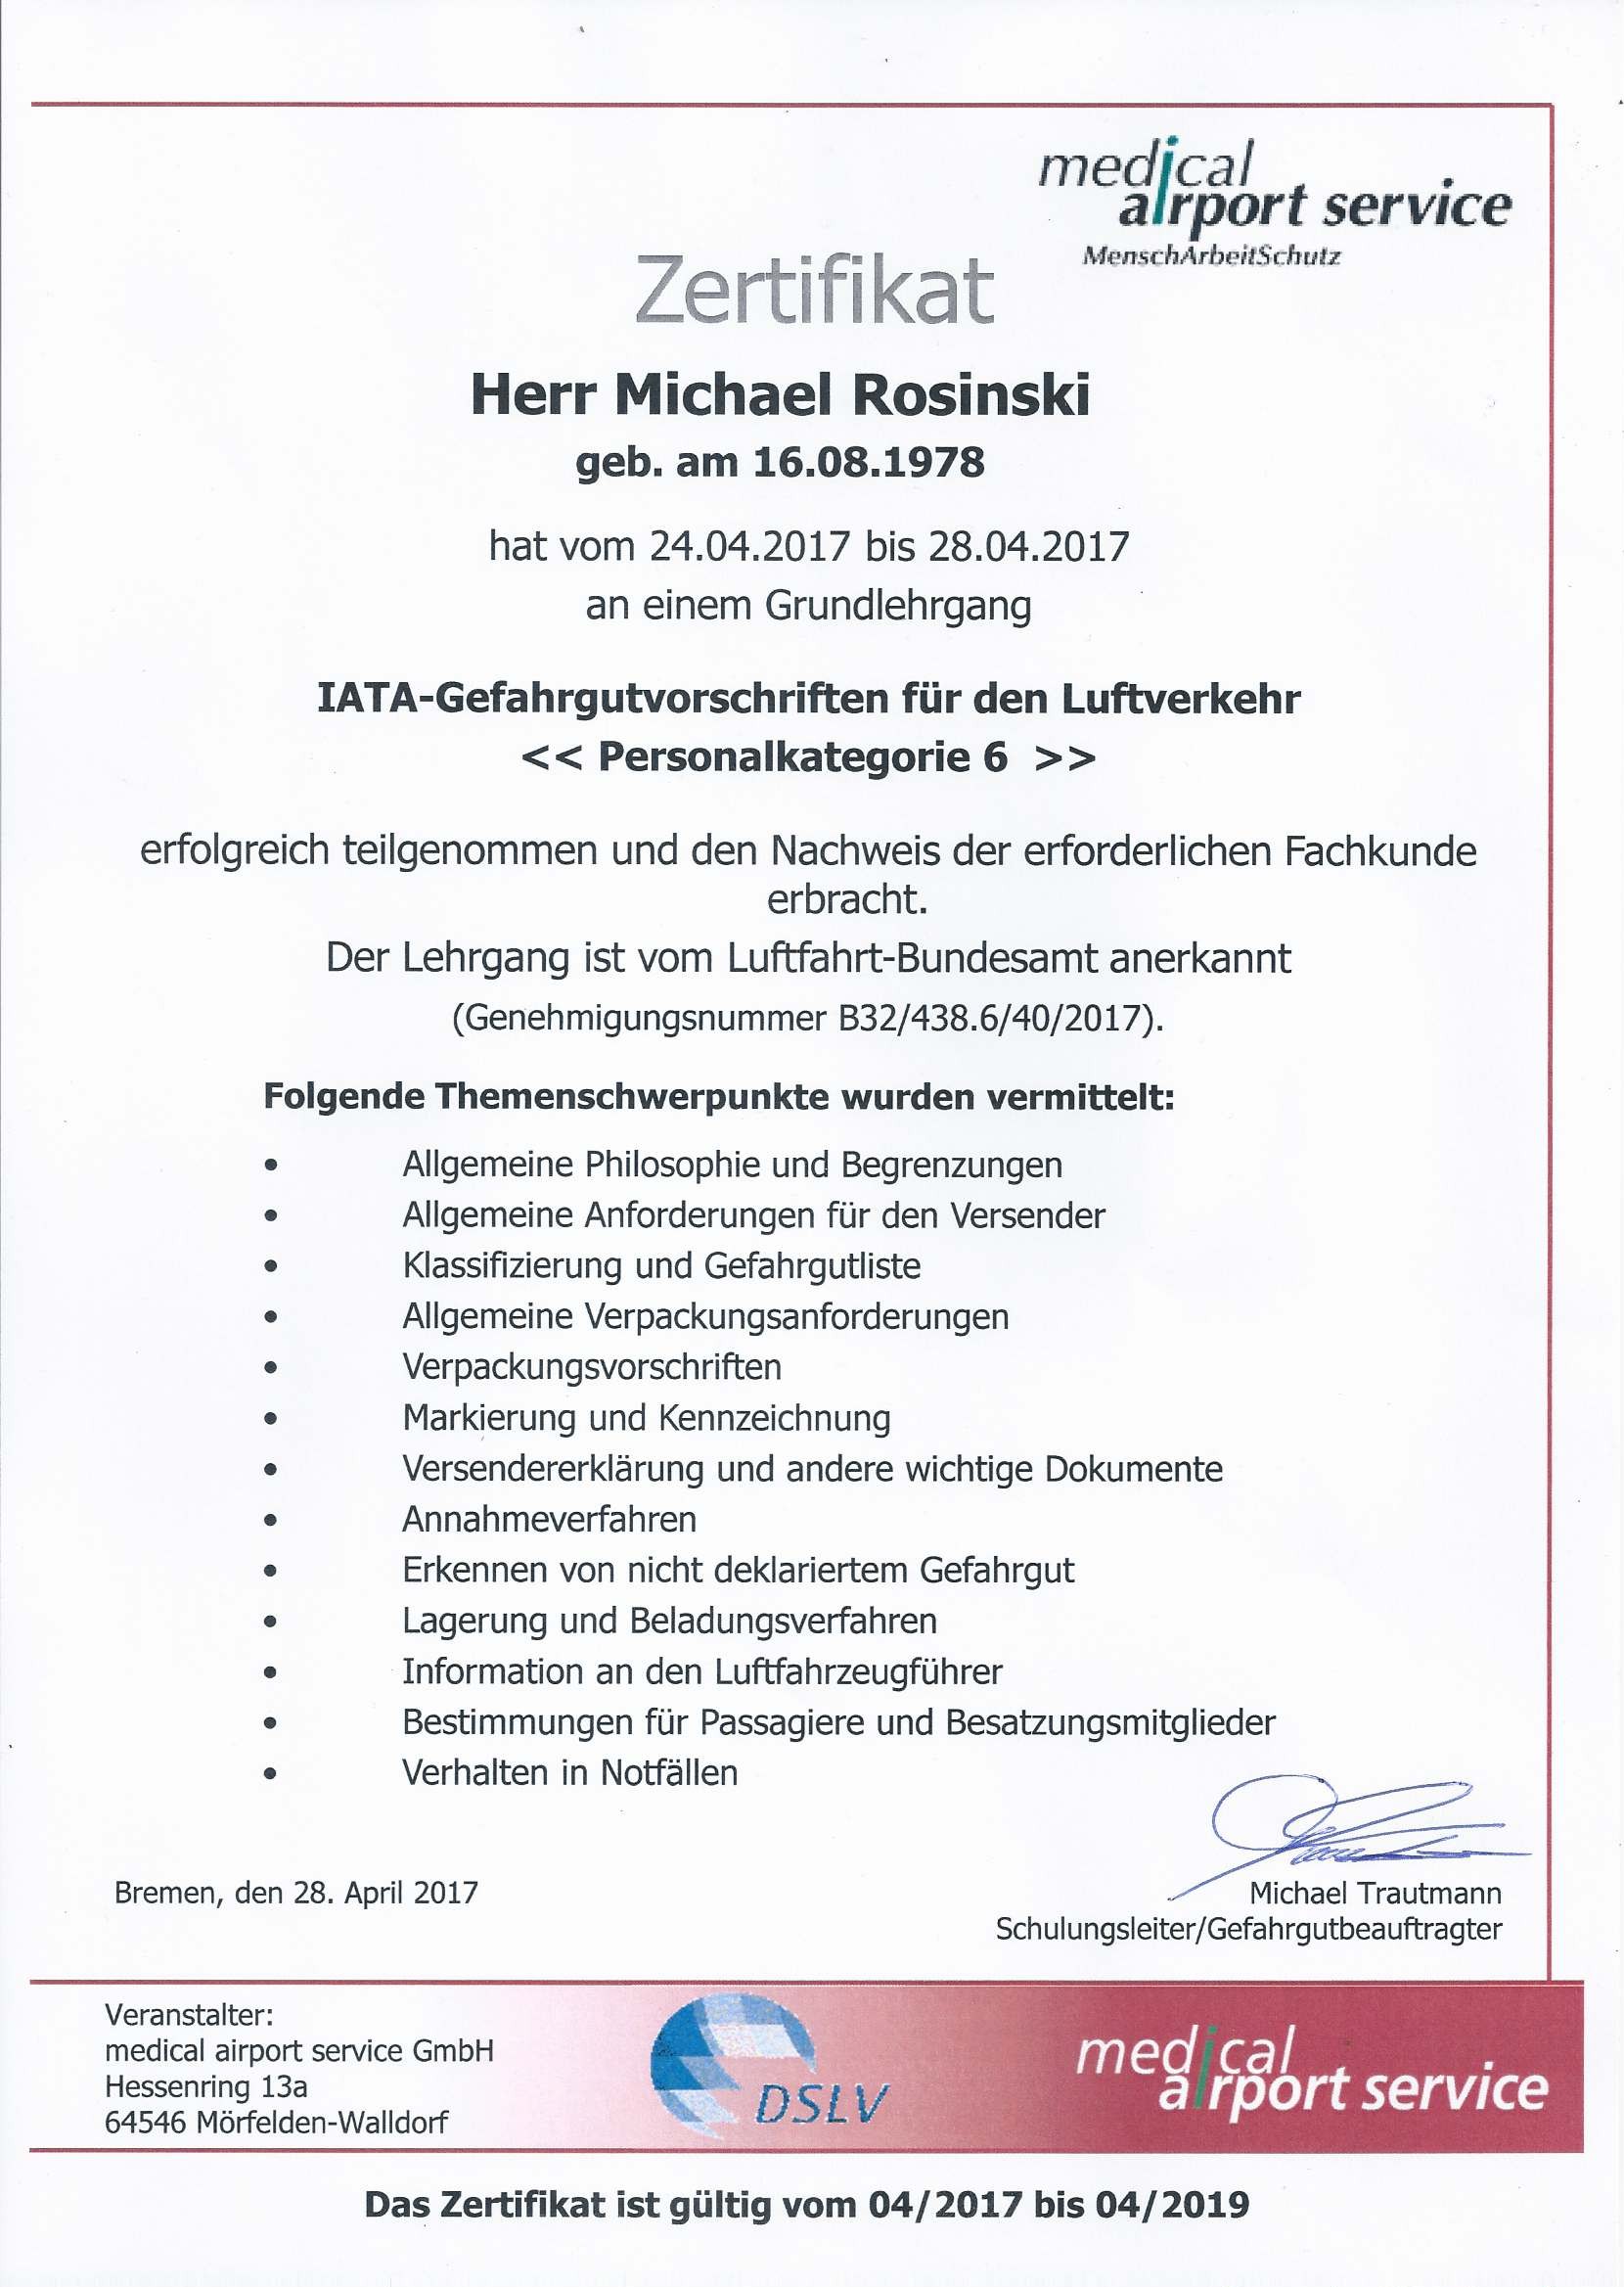 Zertifikat IATA Gefahrgutvorschriften für den Luftverkehr - Personalkategorie 6